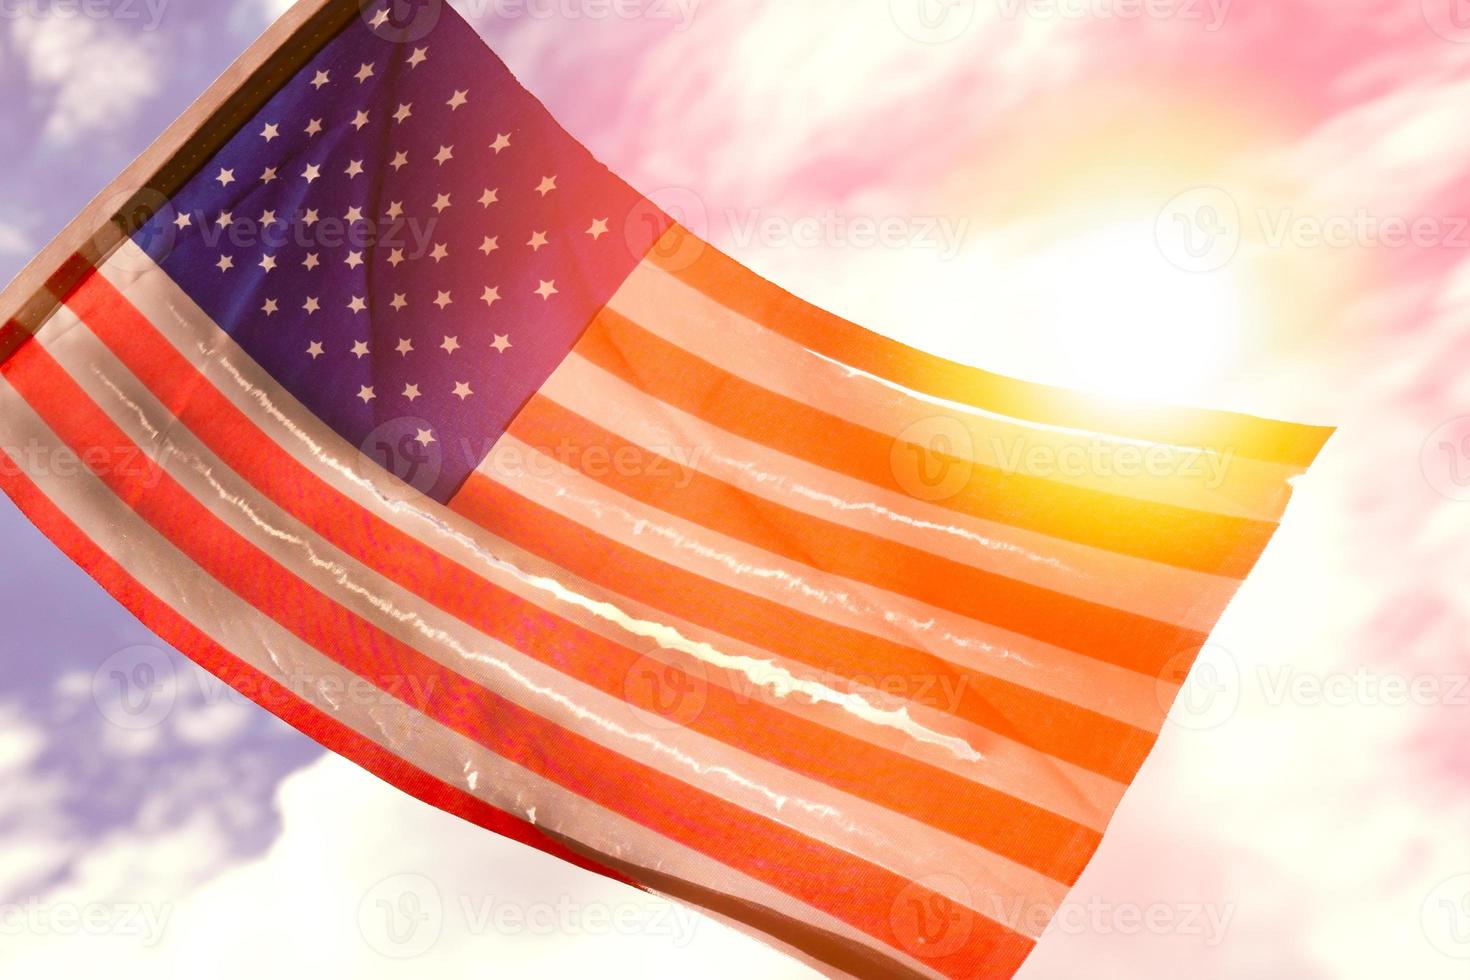 velha bandeira americana dilapidada perfurada queimada grunge esfarrapada pela luz dourada do pôr do sol foto